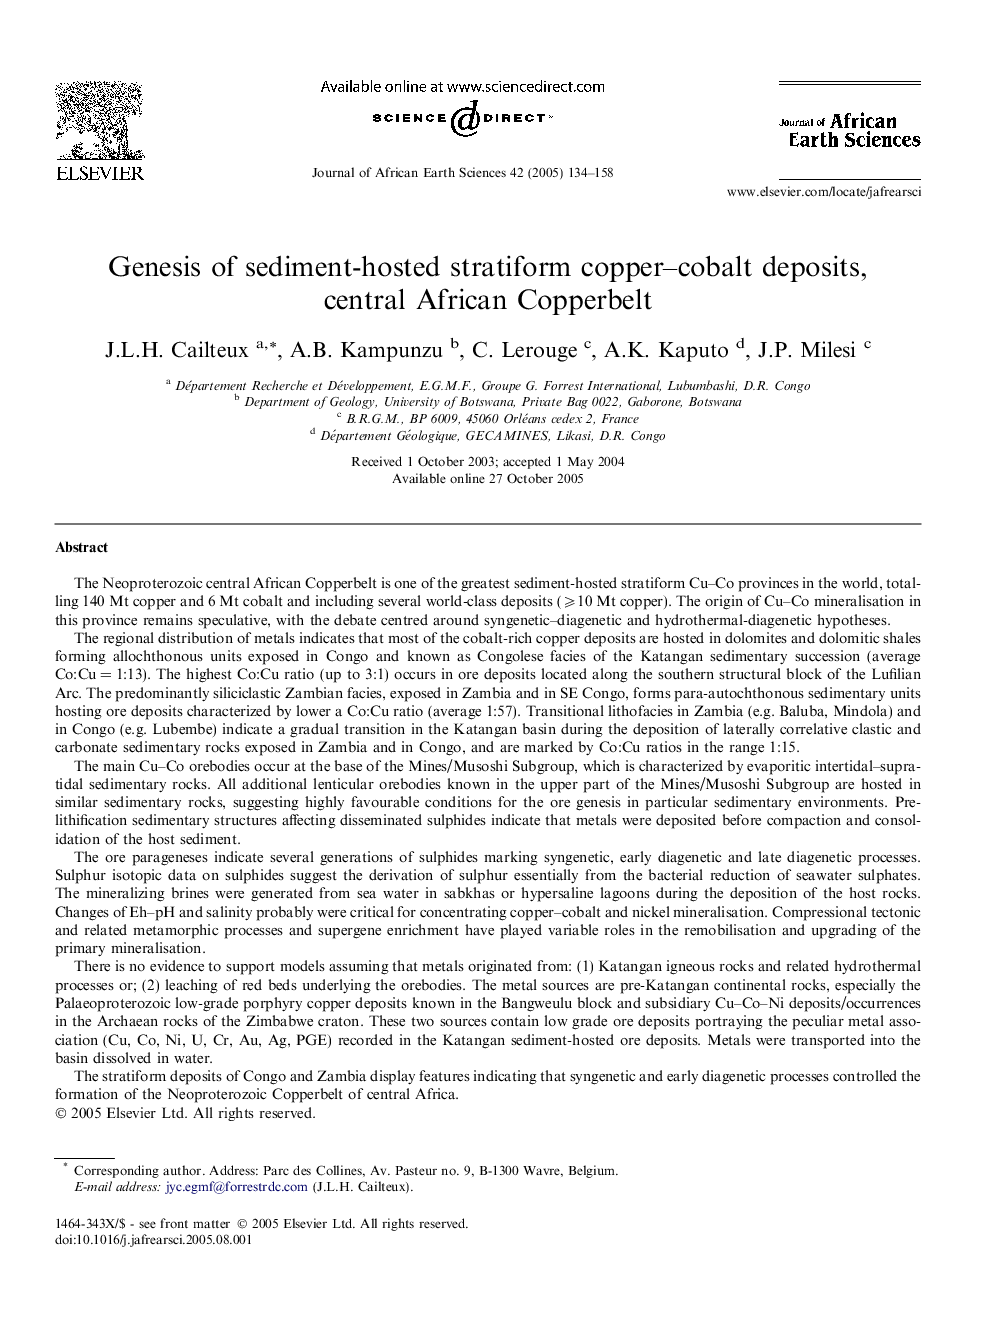 Genesis of sediment-hosted stratiform copper-cobalt deposits, central African Copperbelt